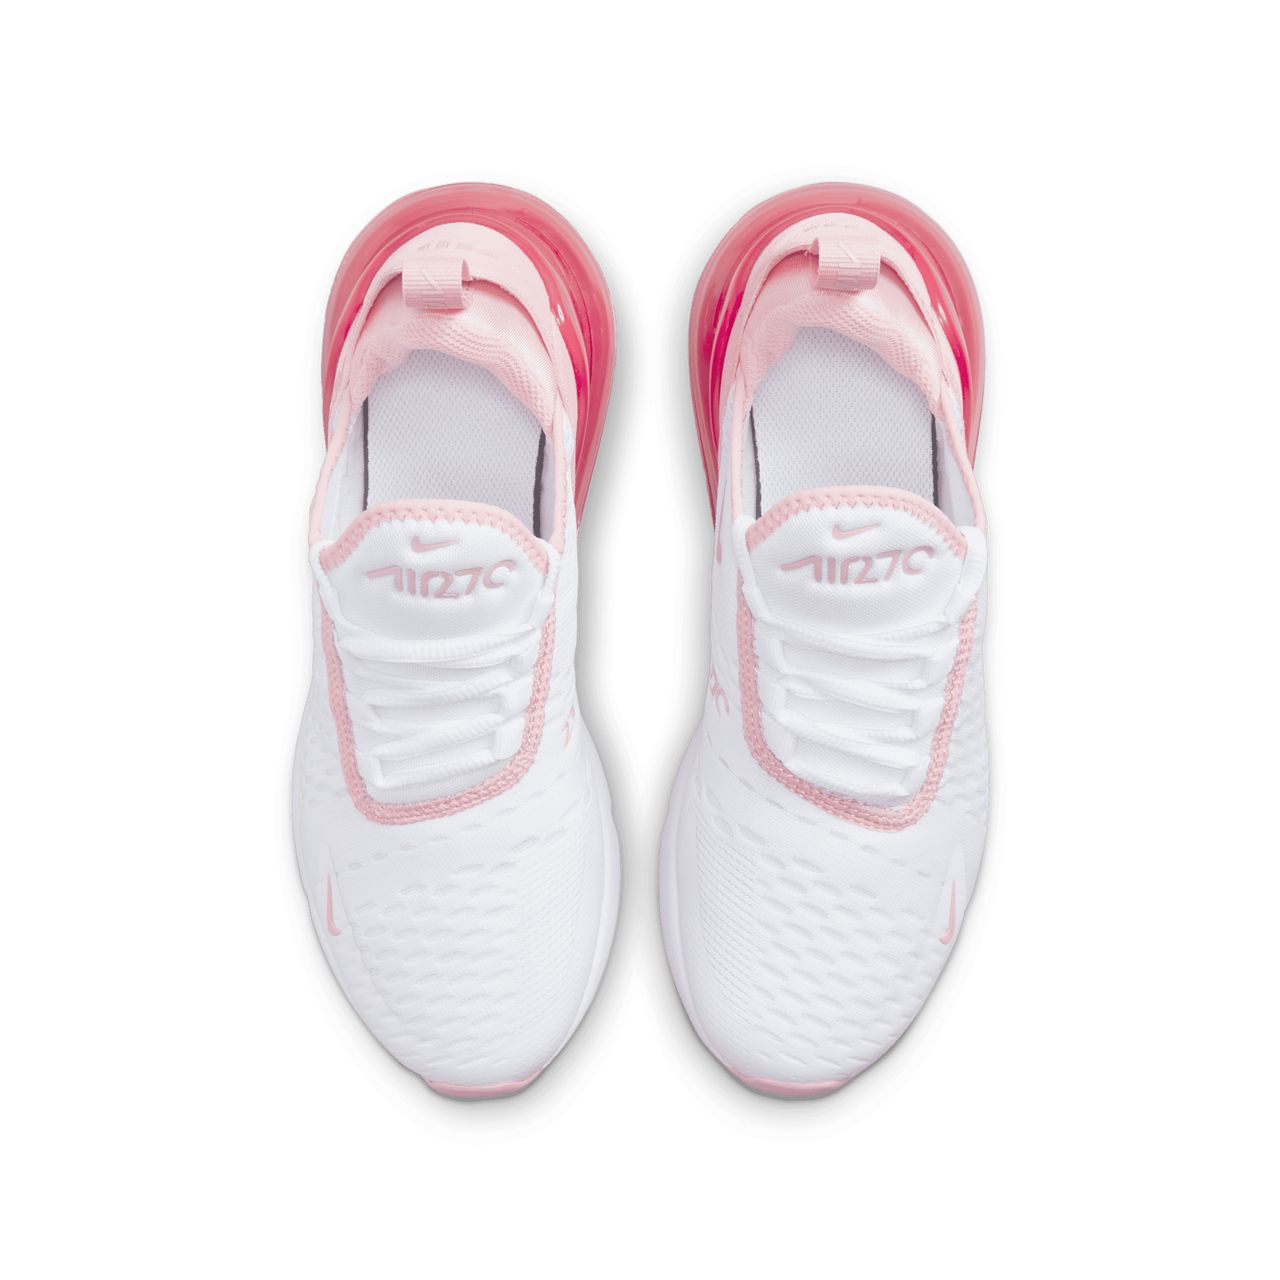 Nike Air Max 270 Schuh für ältere Kinder - Weiß